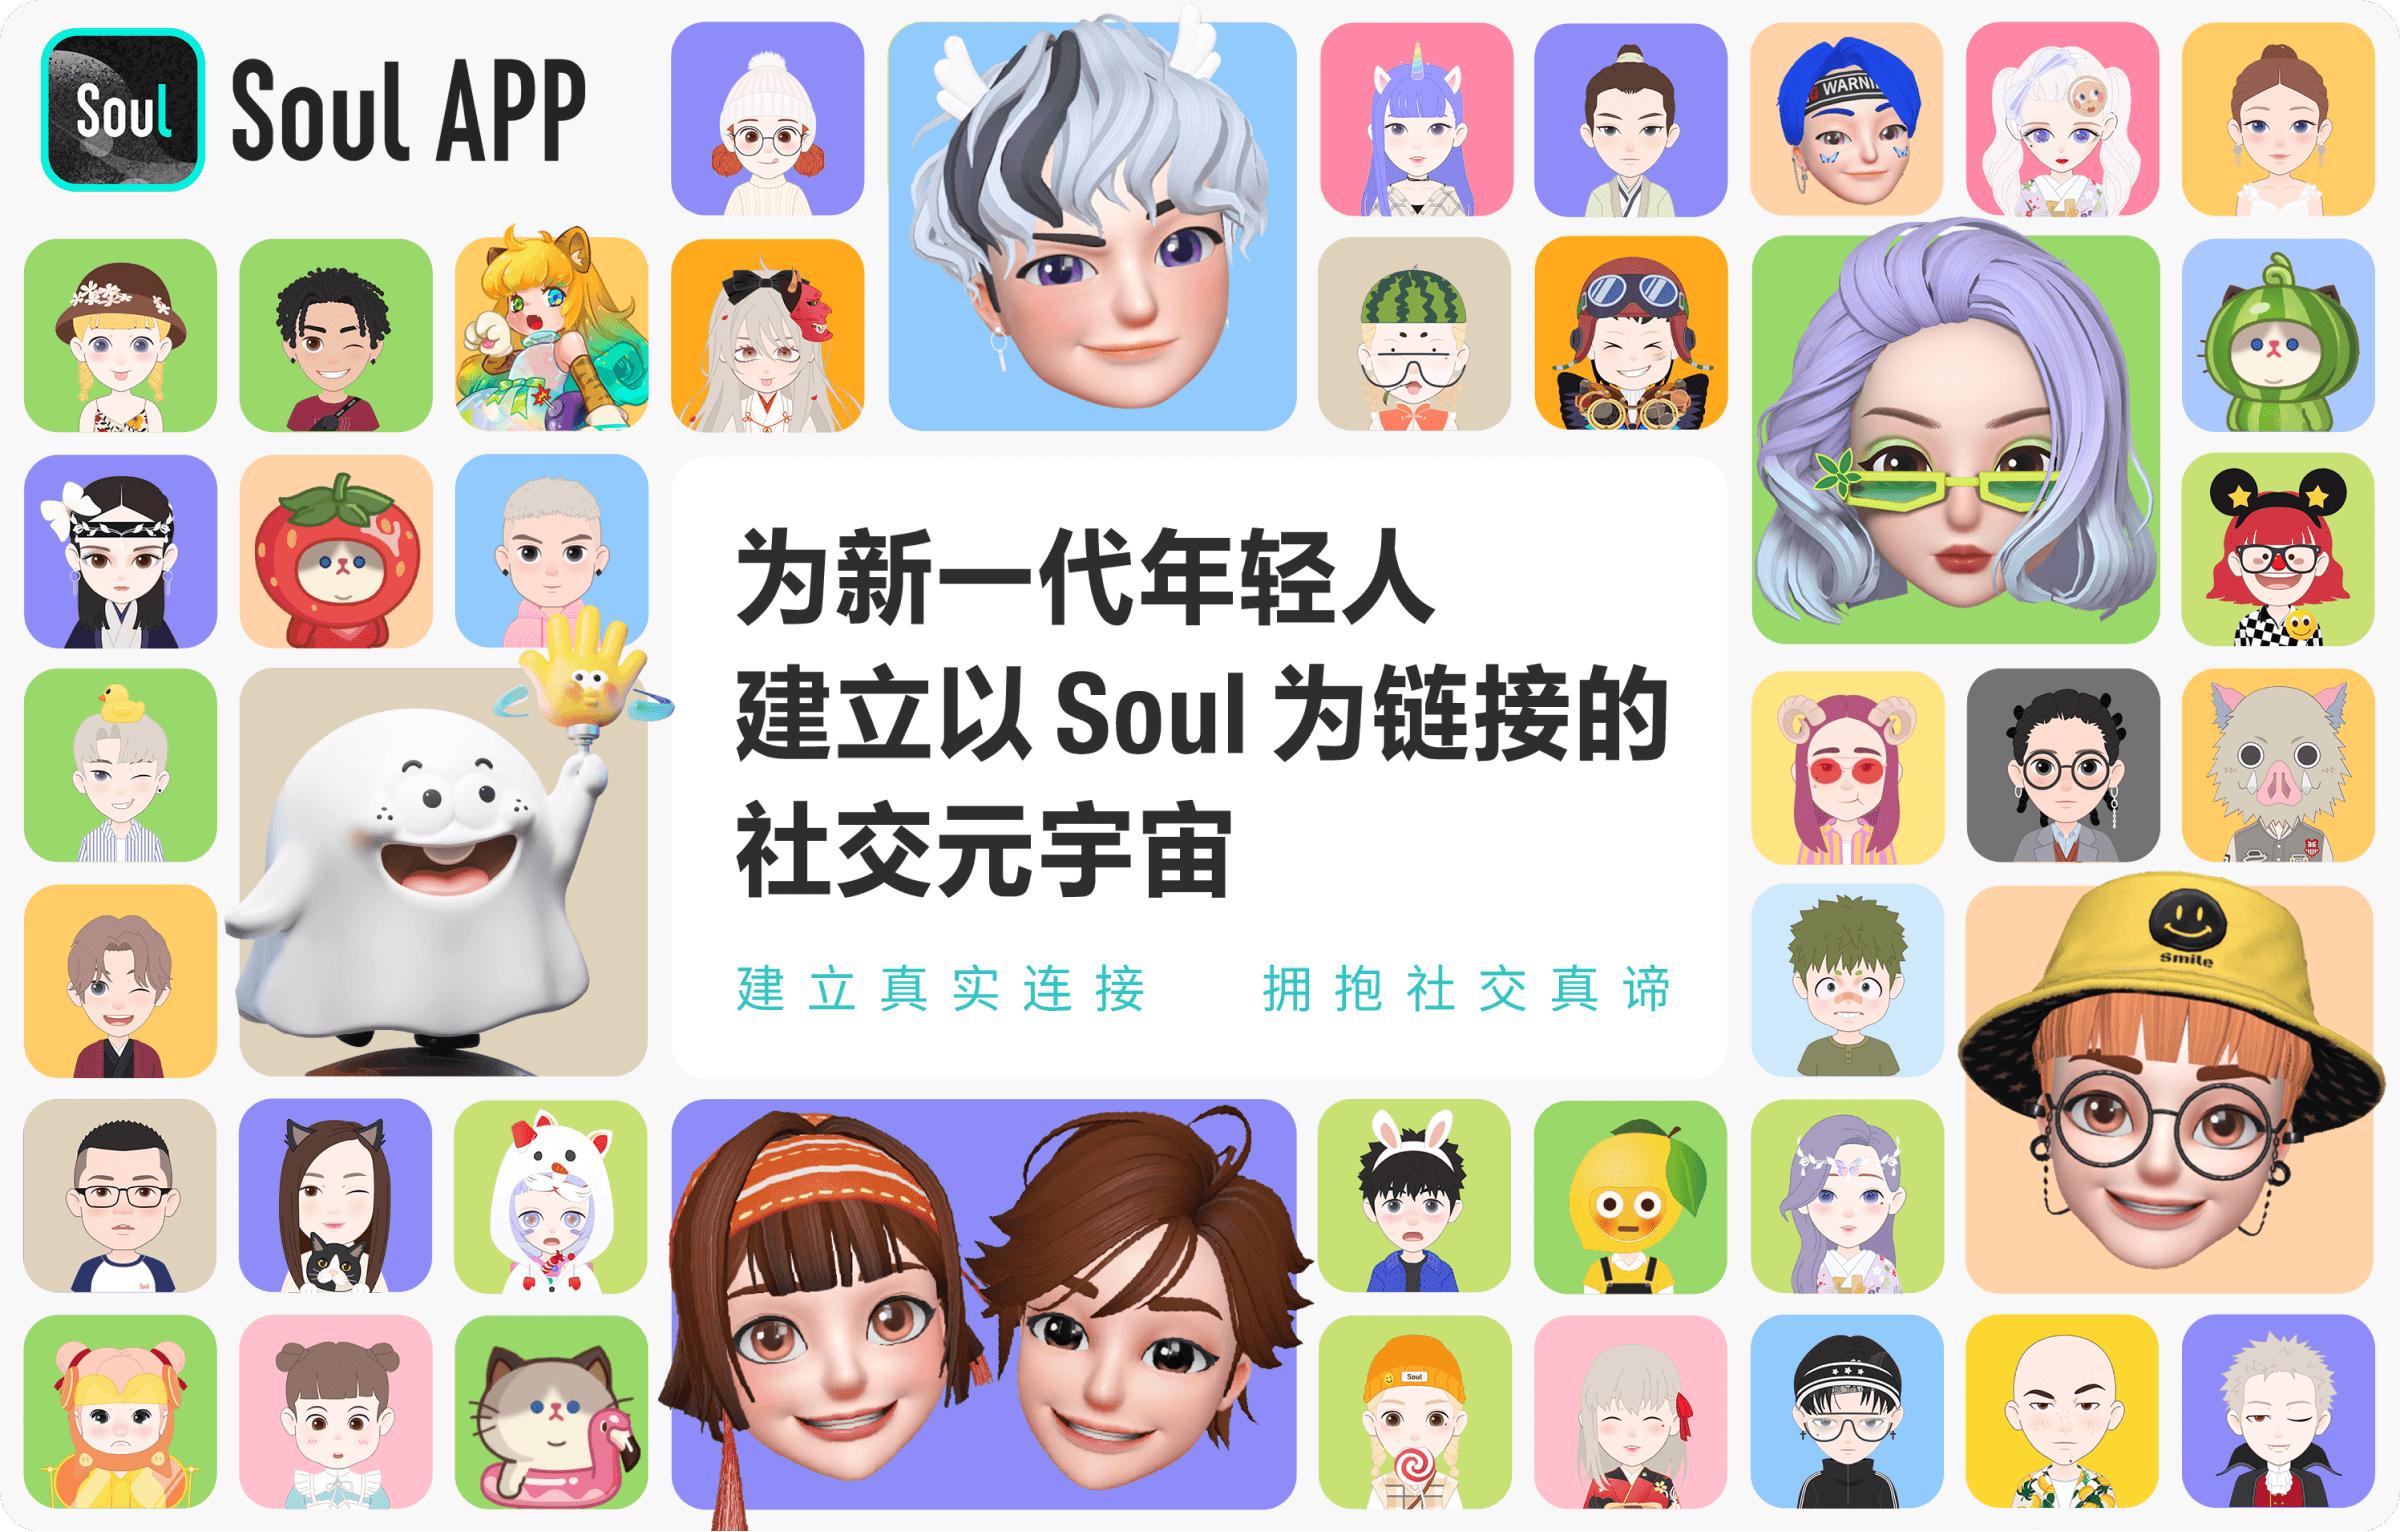 Soul App创始人由年轻人视角出发 引领社交元宇宙新热潮